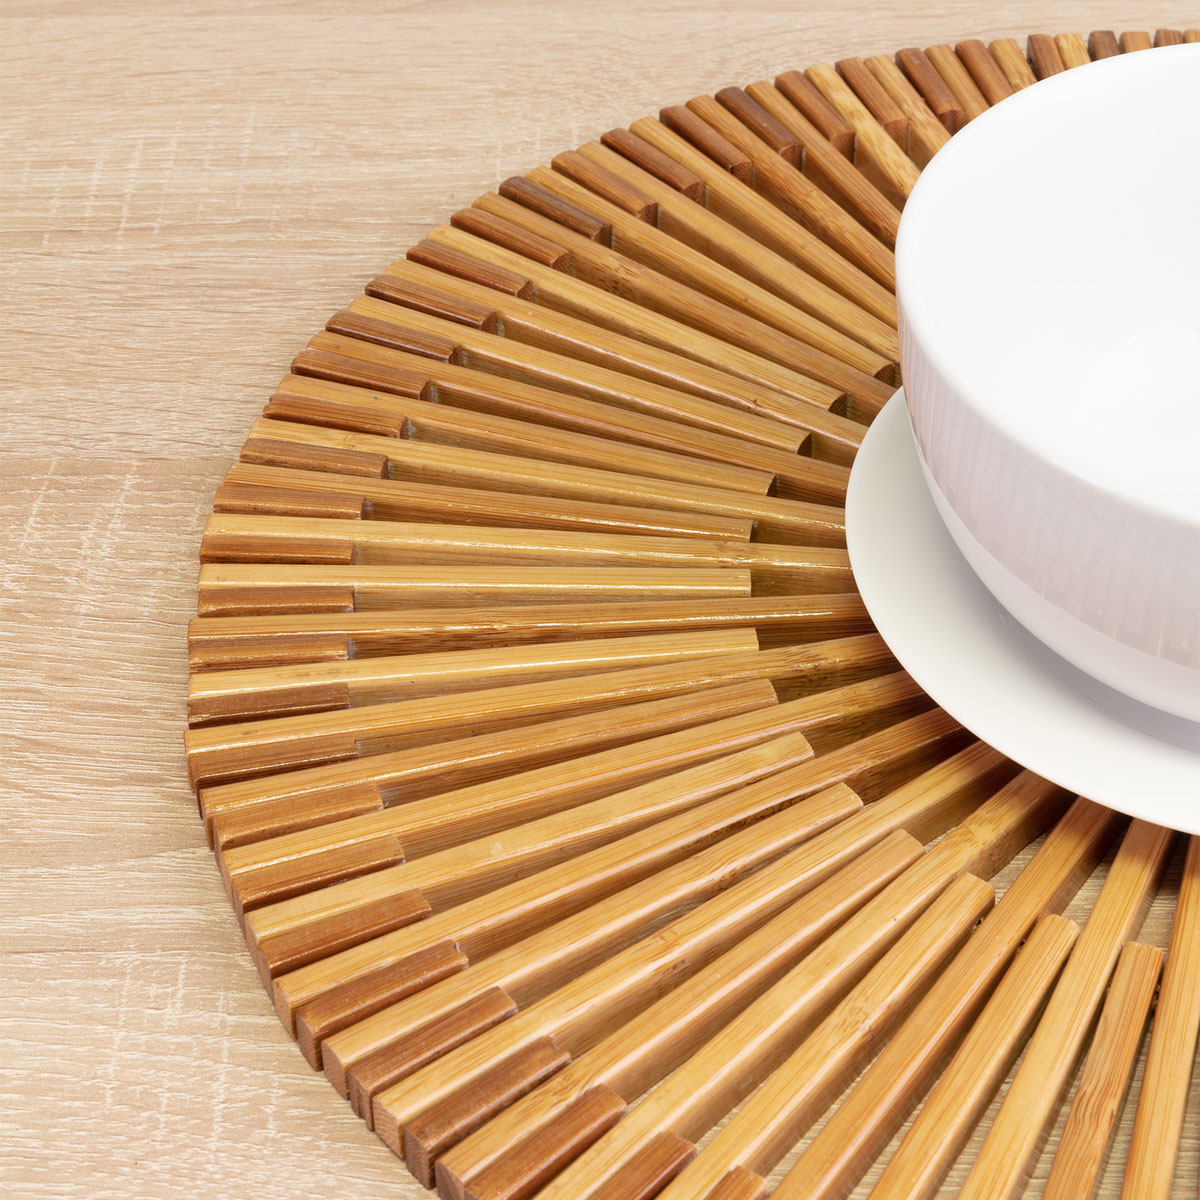 Bambus Tischset »Rondo«, rund, ø 38 cm